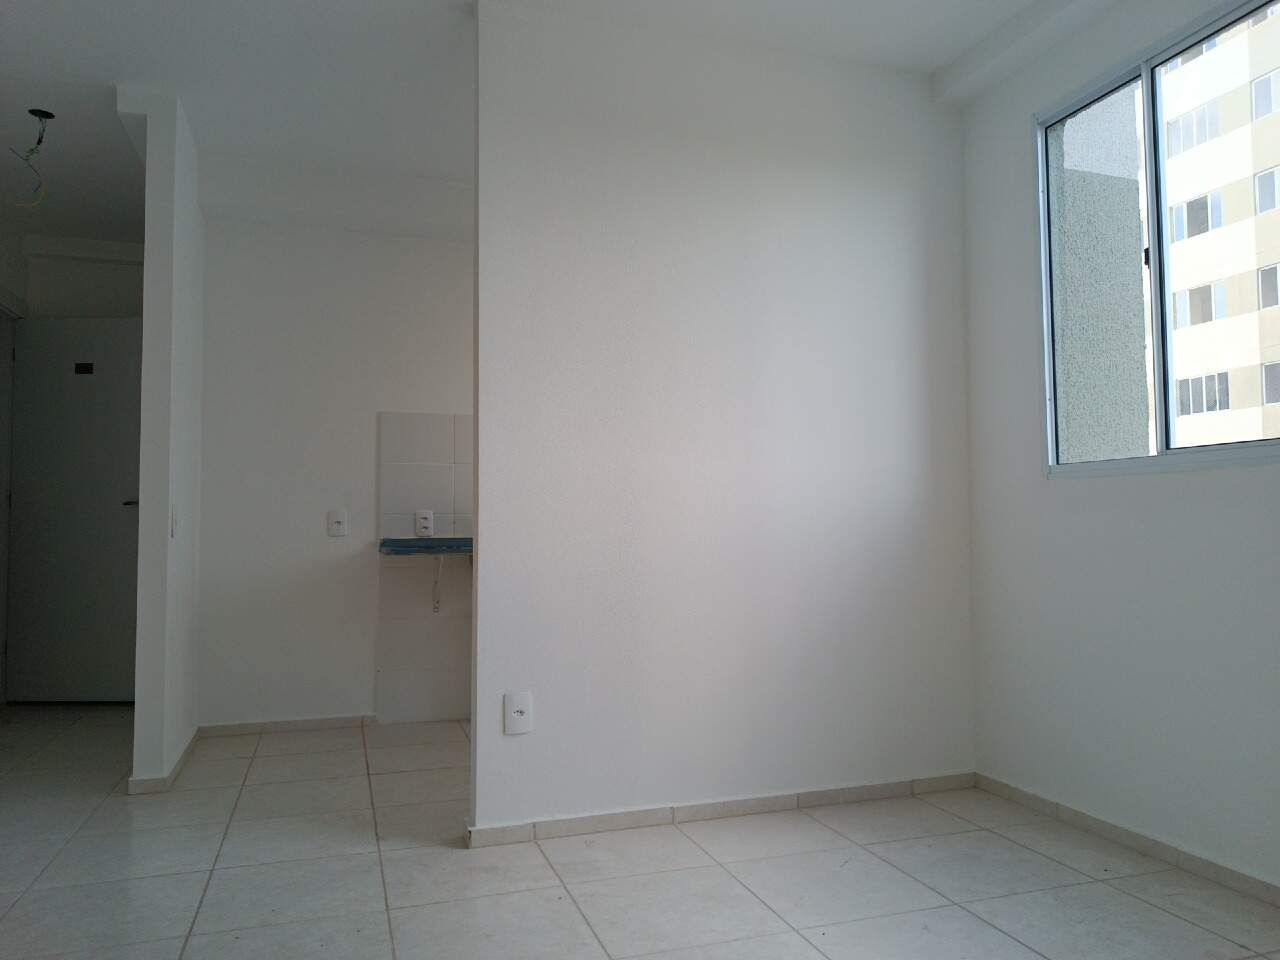 Imagem do imóvel Apartamento à venda, 2 quartos, 1 vaga, Palmeiras - Belo Horizonte/MG